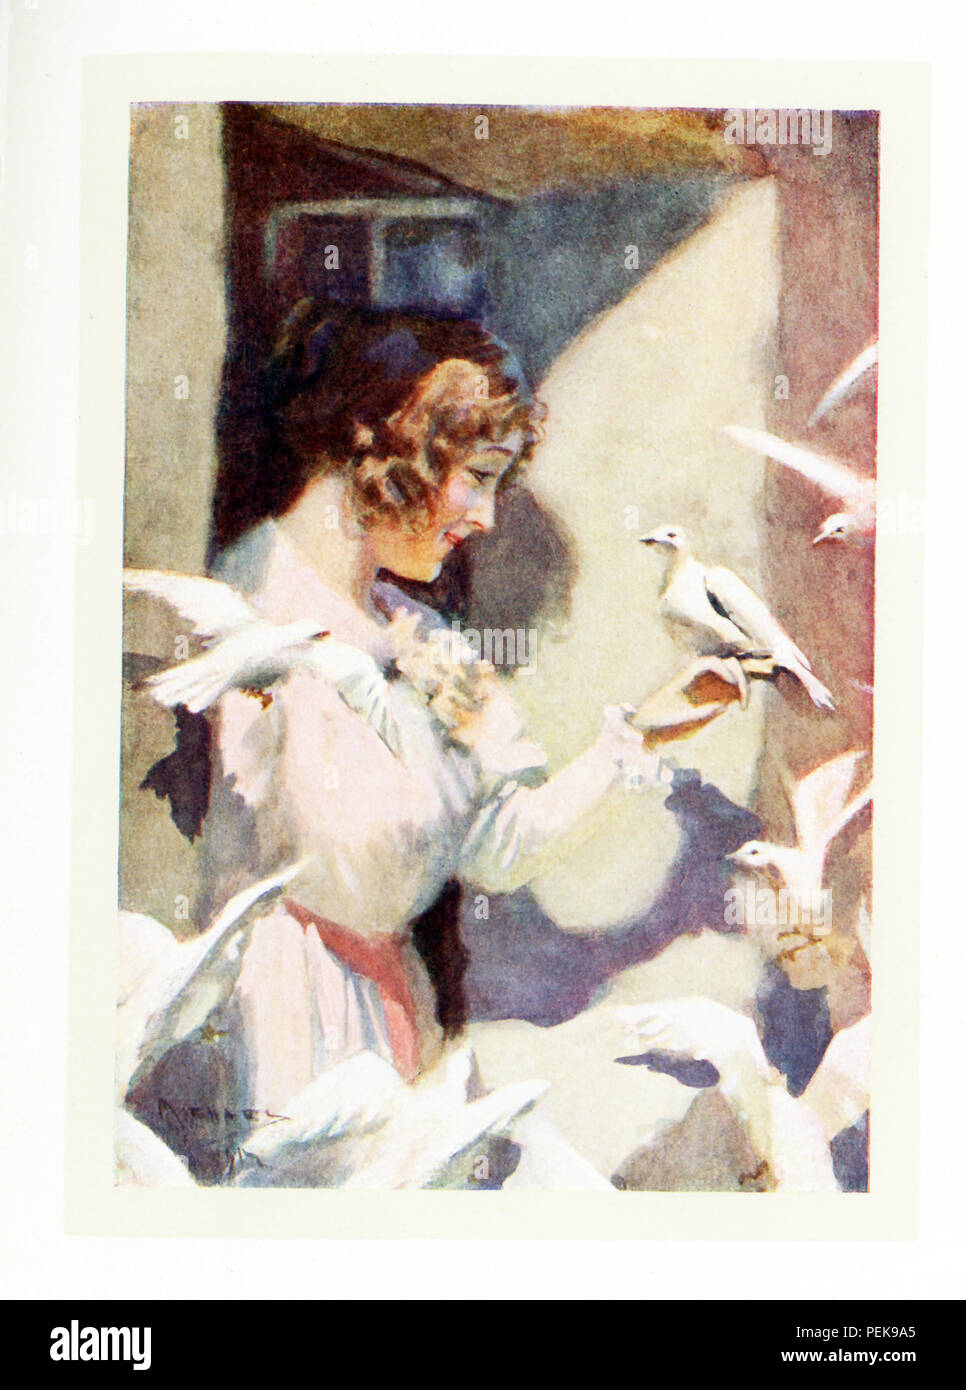 Diese Abbildung stammt aus der frühen 1900er Jahre und zeigt Hilda mit Tauben, die Geschichte von Hilda ist Gefunden in Nathaniel Hawthorne's Marble Faun, auch als die Romantik der Monte Beni bekannt. Die Bildunterschrift lautet: Sie wurde bald vertraut mit den fairhaired Sächsische Mädchen, als wenn Sie eine geborene Schwester wurden von ihrer Brut. - Transformation. Nathaniel Hawthorne (1804-1864) war ein US-amerikanischer Schriftsteller und Short story writer. Sein Wonder-Book und Tanglewood Tales sind die Kinder Klassiker. Er schrieb auch die Scarlet Letter, Blithedale Romance, das Haus der sieben Giebel, der Marble Faun. Mit seiner großartigen Schaffung von dunkel-hued Ein Stockfoto